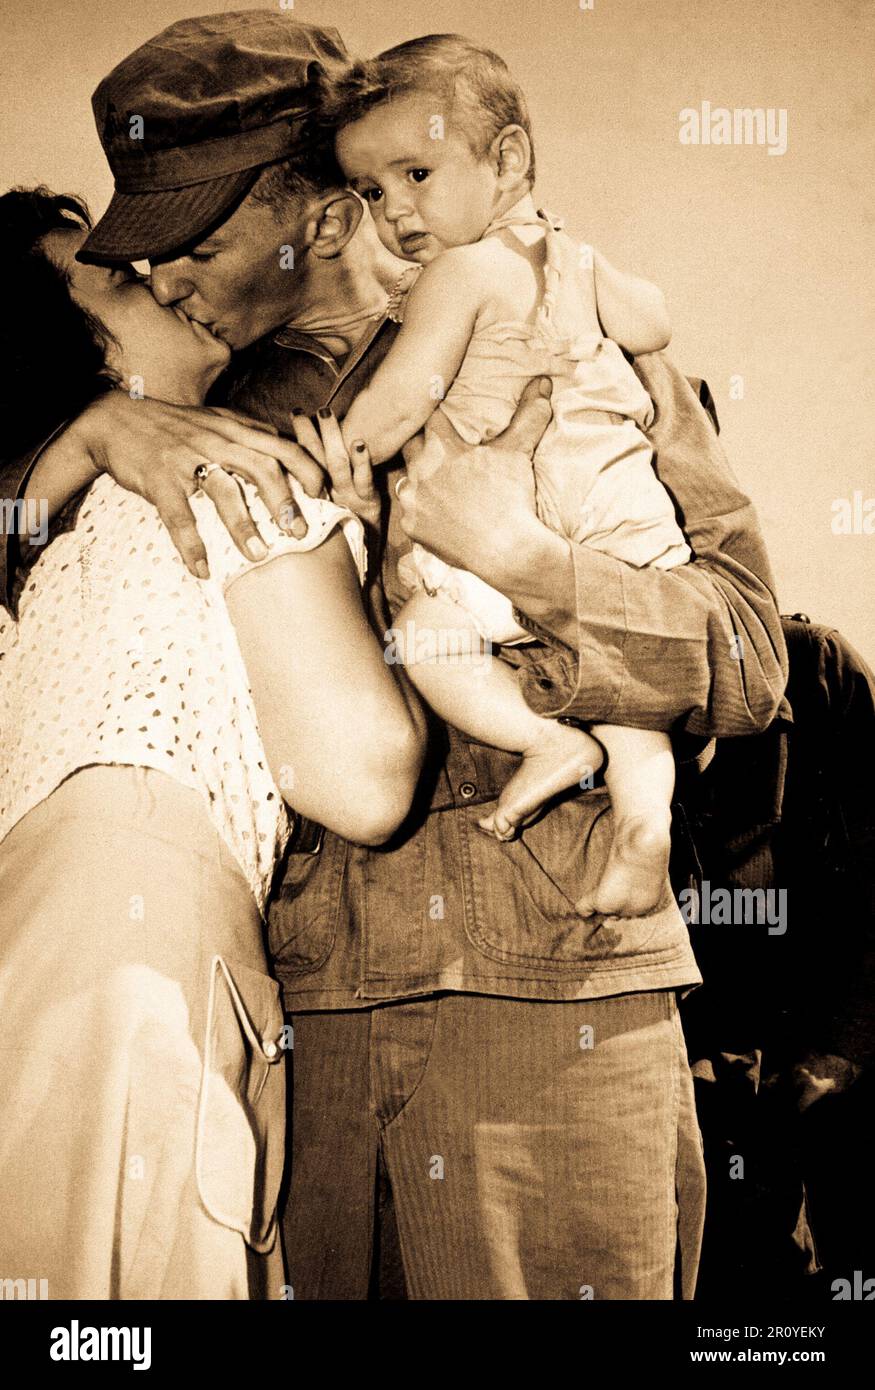 CPL John W. Simms von Bradbury Heights, MD, zeigt bieten seine Frau Ann, und ihre 8-Monate alten Sohn, John Jr., auf Wiedersehen als He Blätter für Korea, 1950. Stockfoto